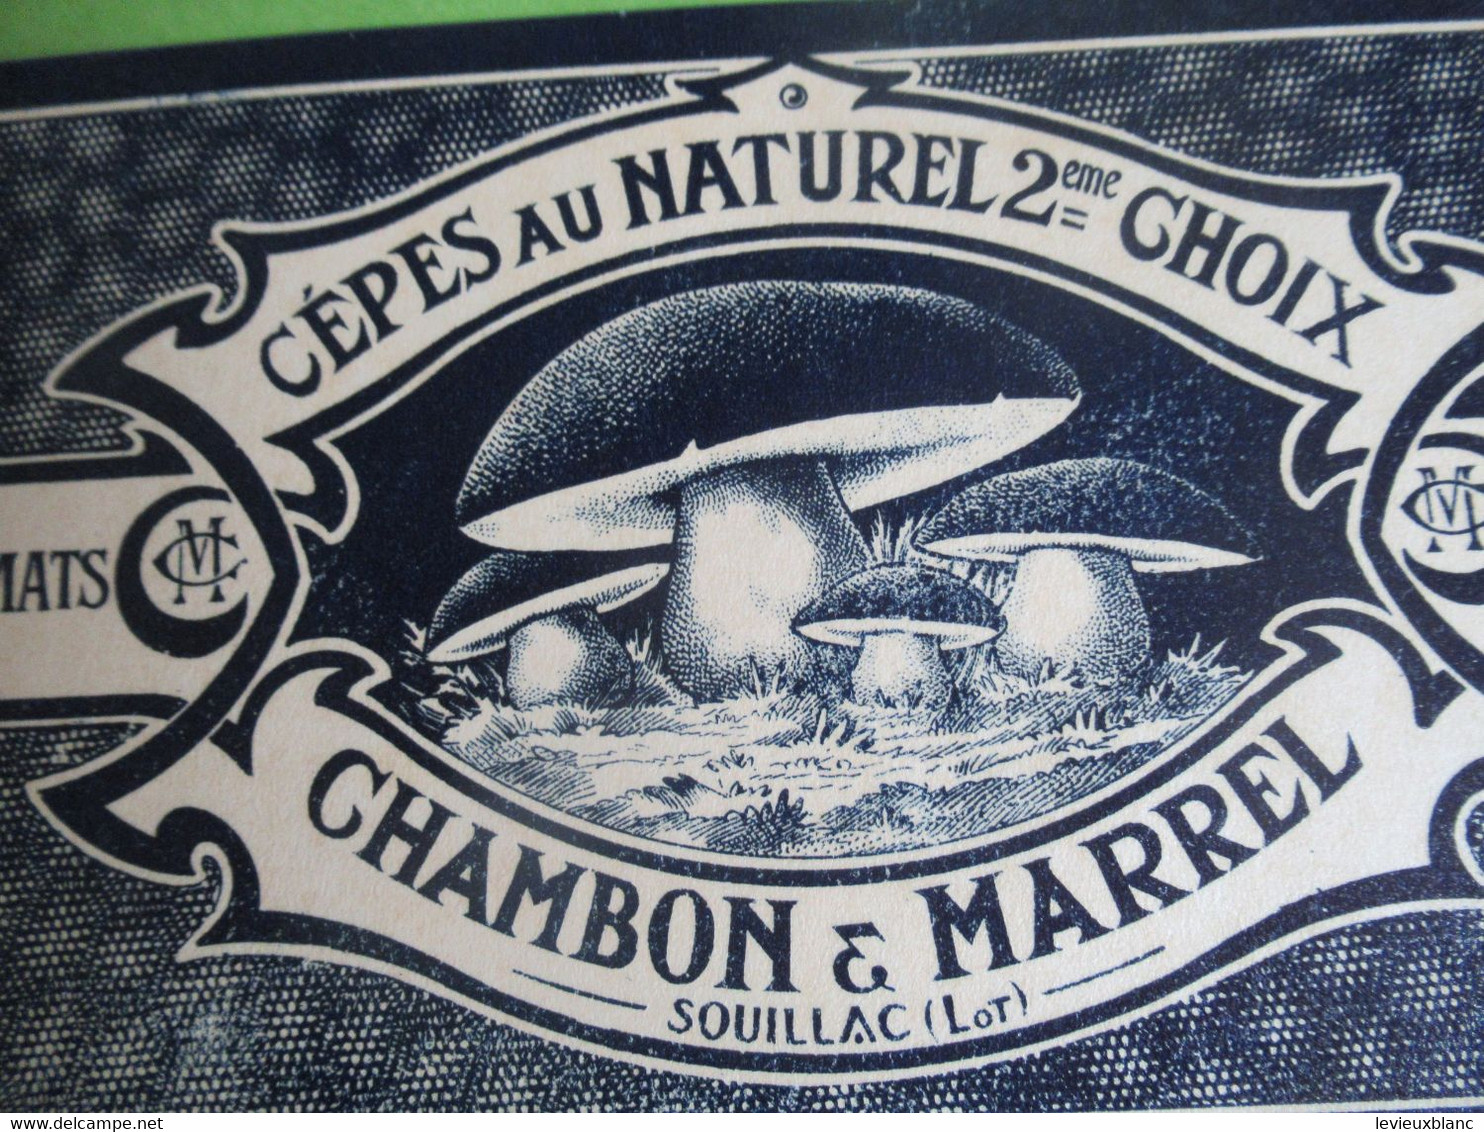 Etiquette Conserve/Cèpes Au Naturel 2éme Choix/CHAMBON & MARREL/SOUILLAC ( Lot ) /début XX                  ETIQ181 - Fruits & Vegetables